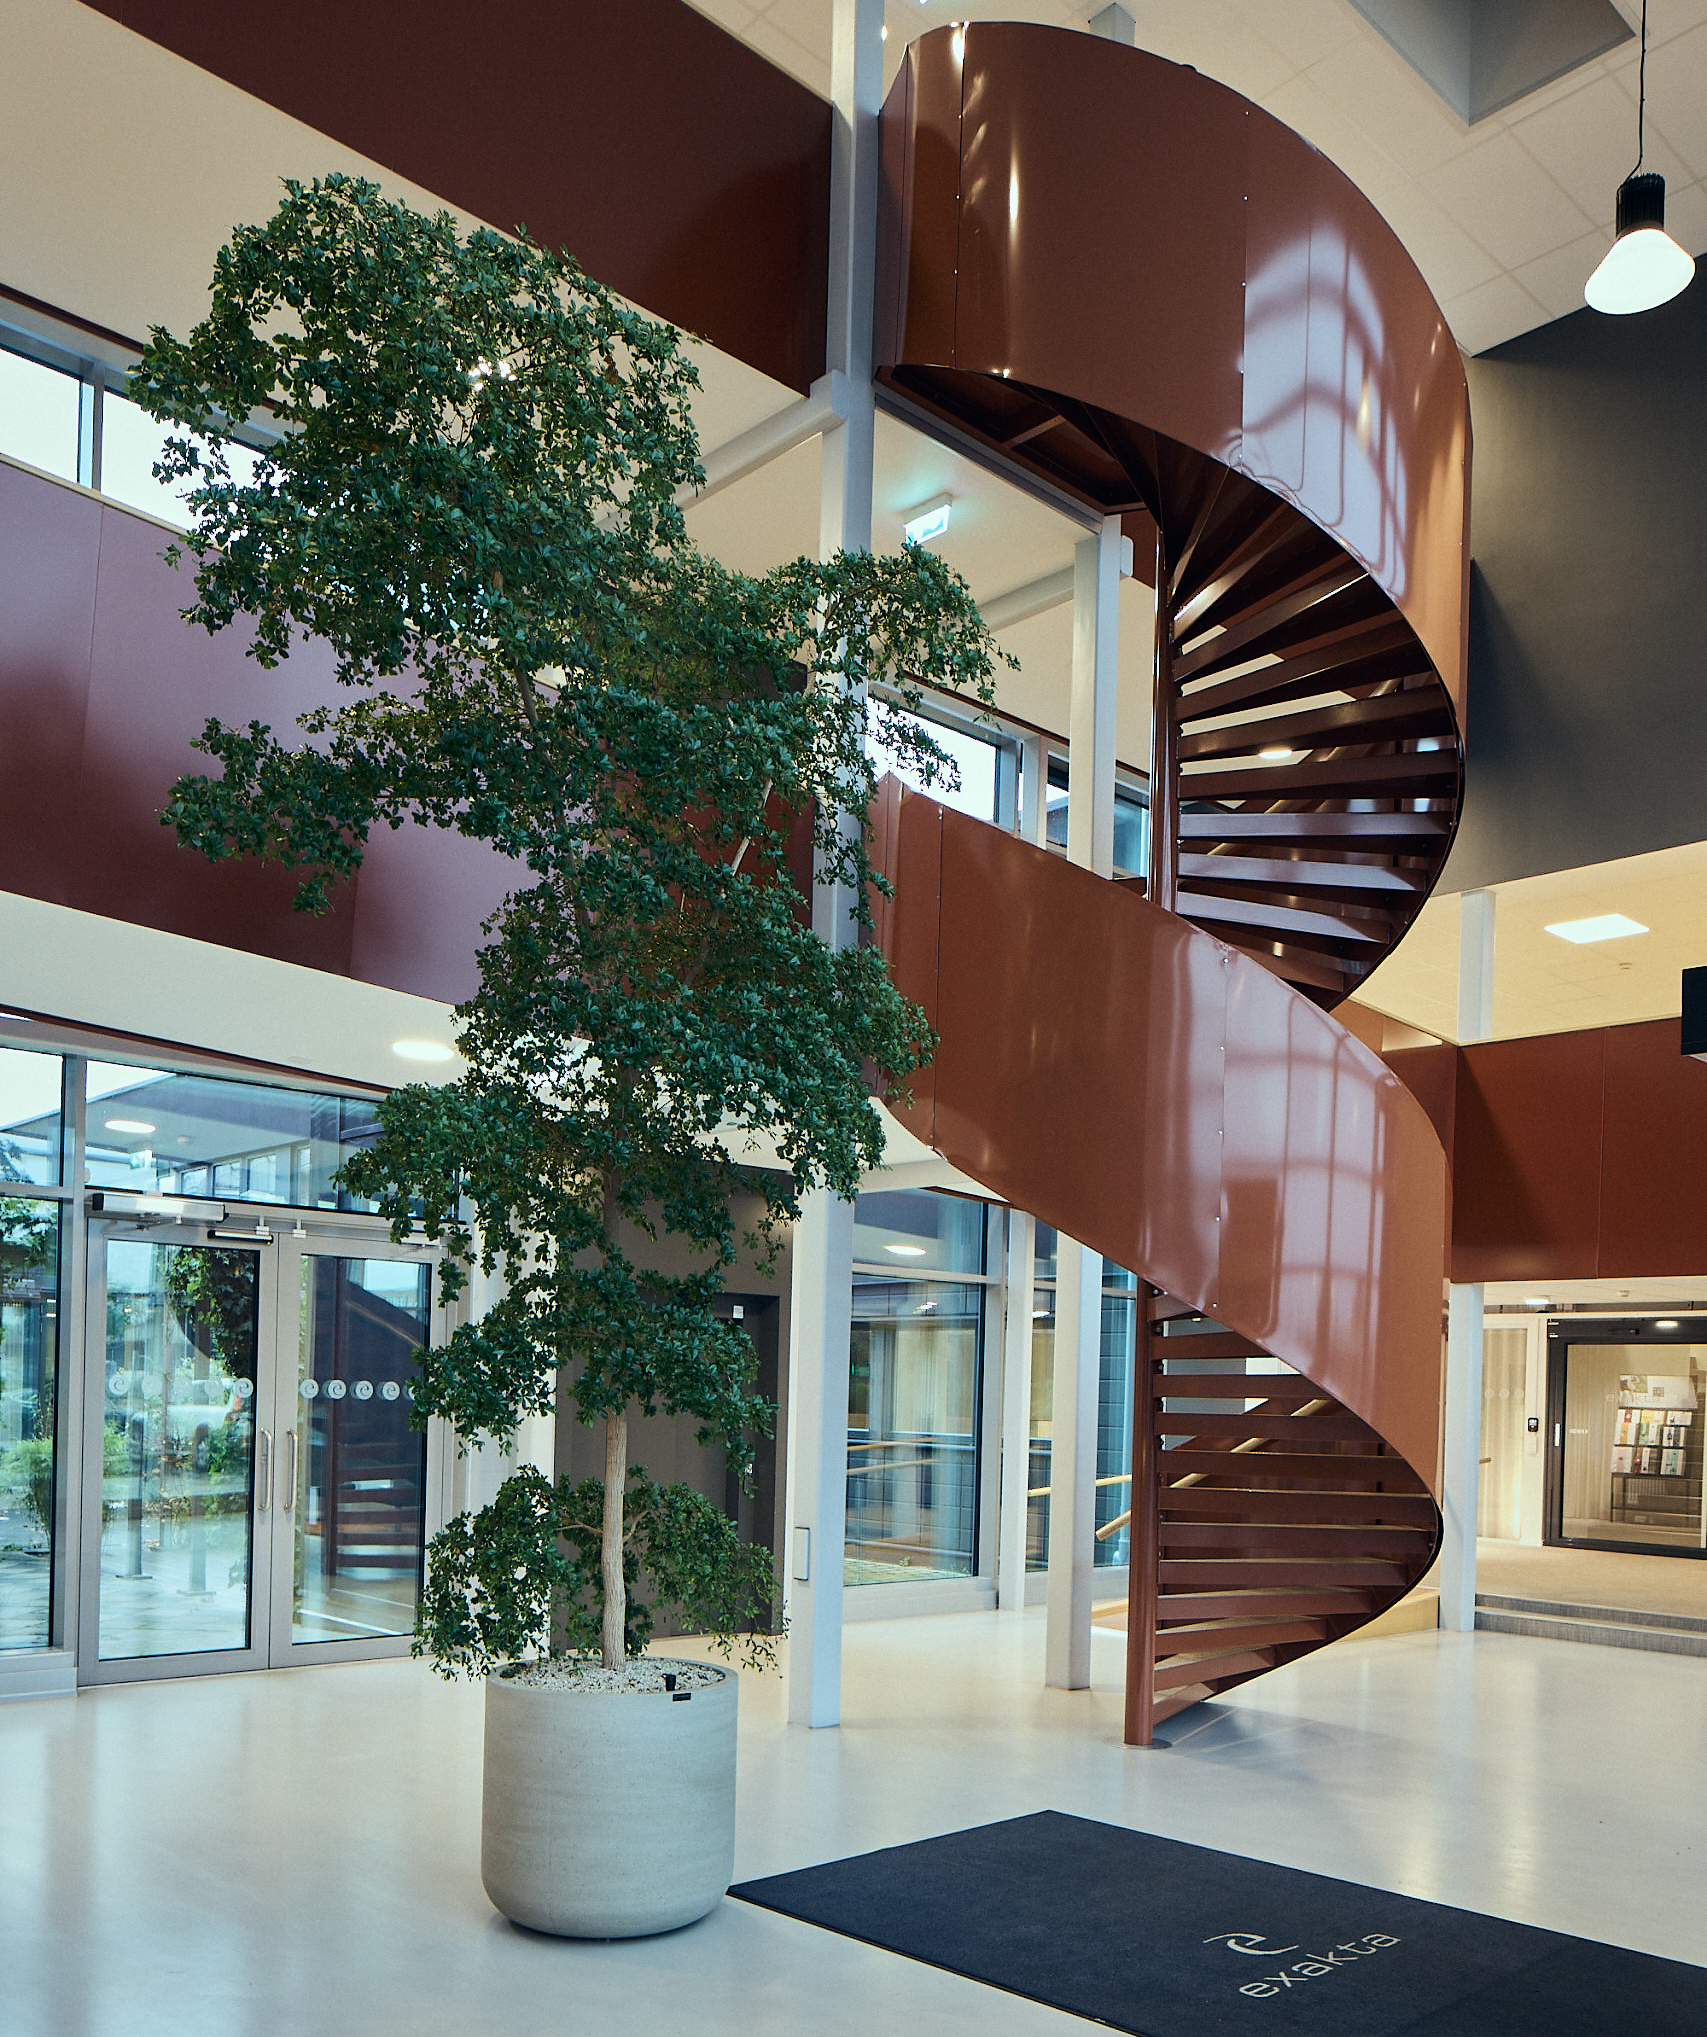 Lobbyn på Exakta: En stor grön krukplanta och en brunorange trappa som leder till flera våningar.